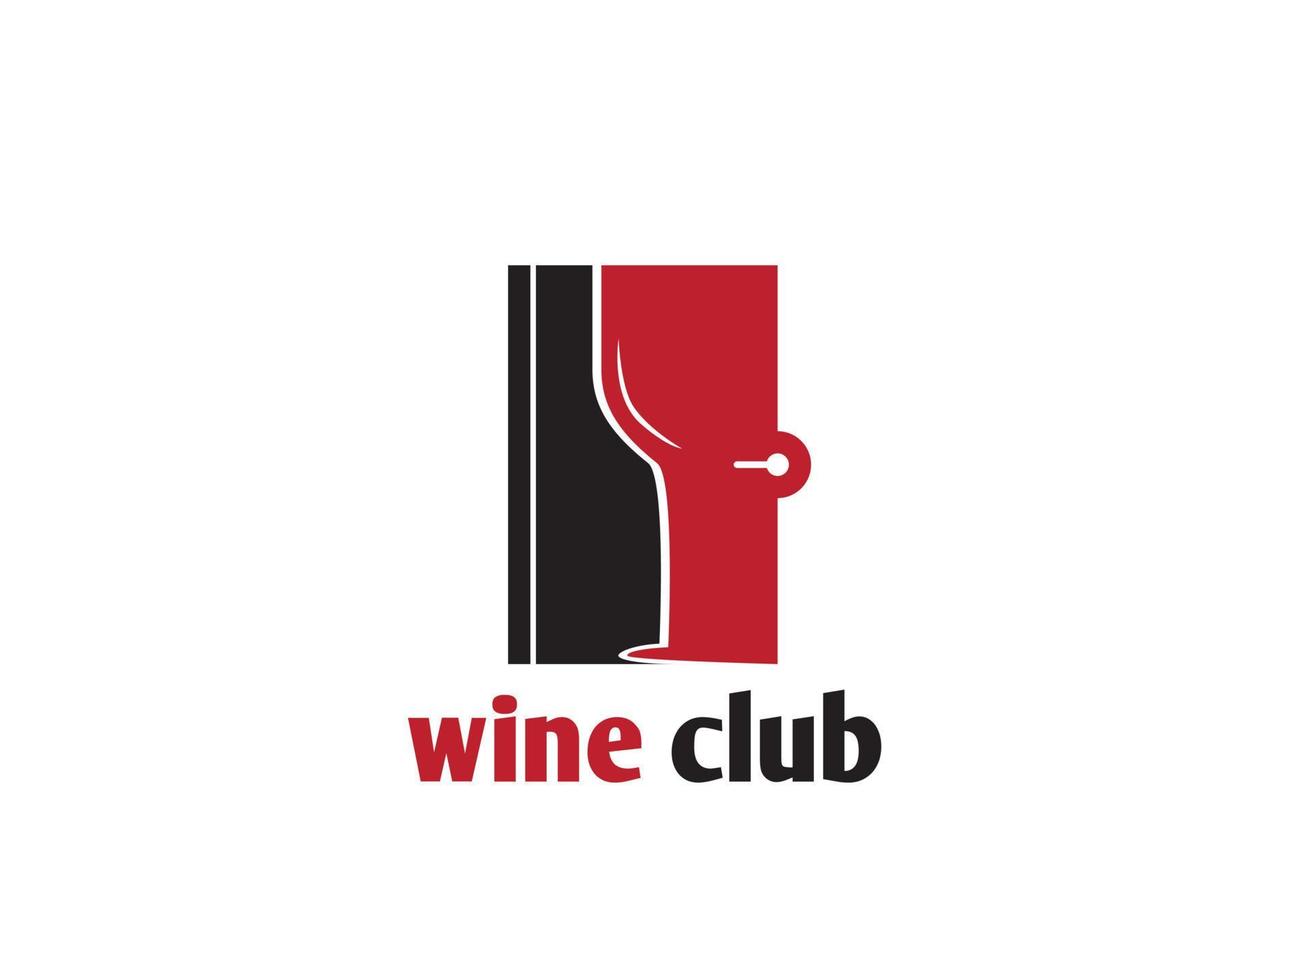 logo du bar de la porte du club de vin vecteur